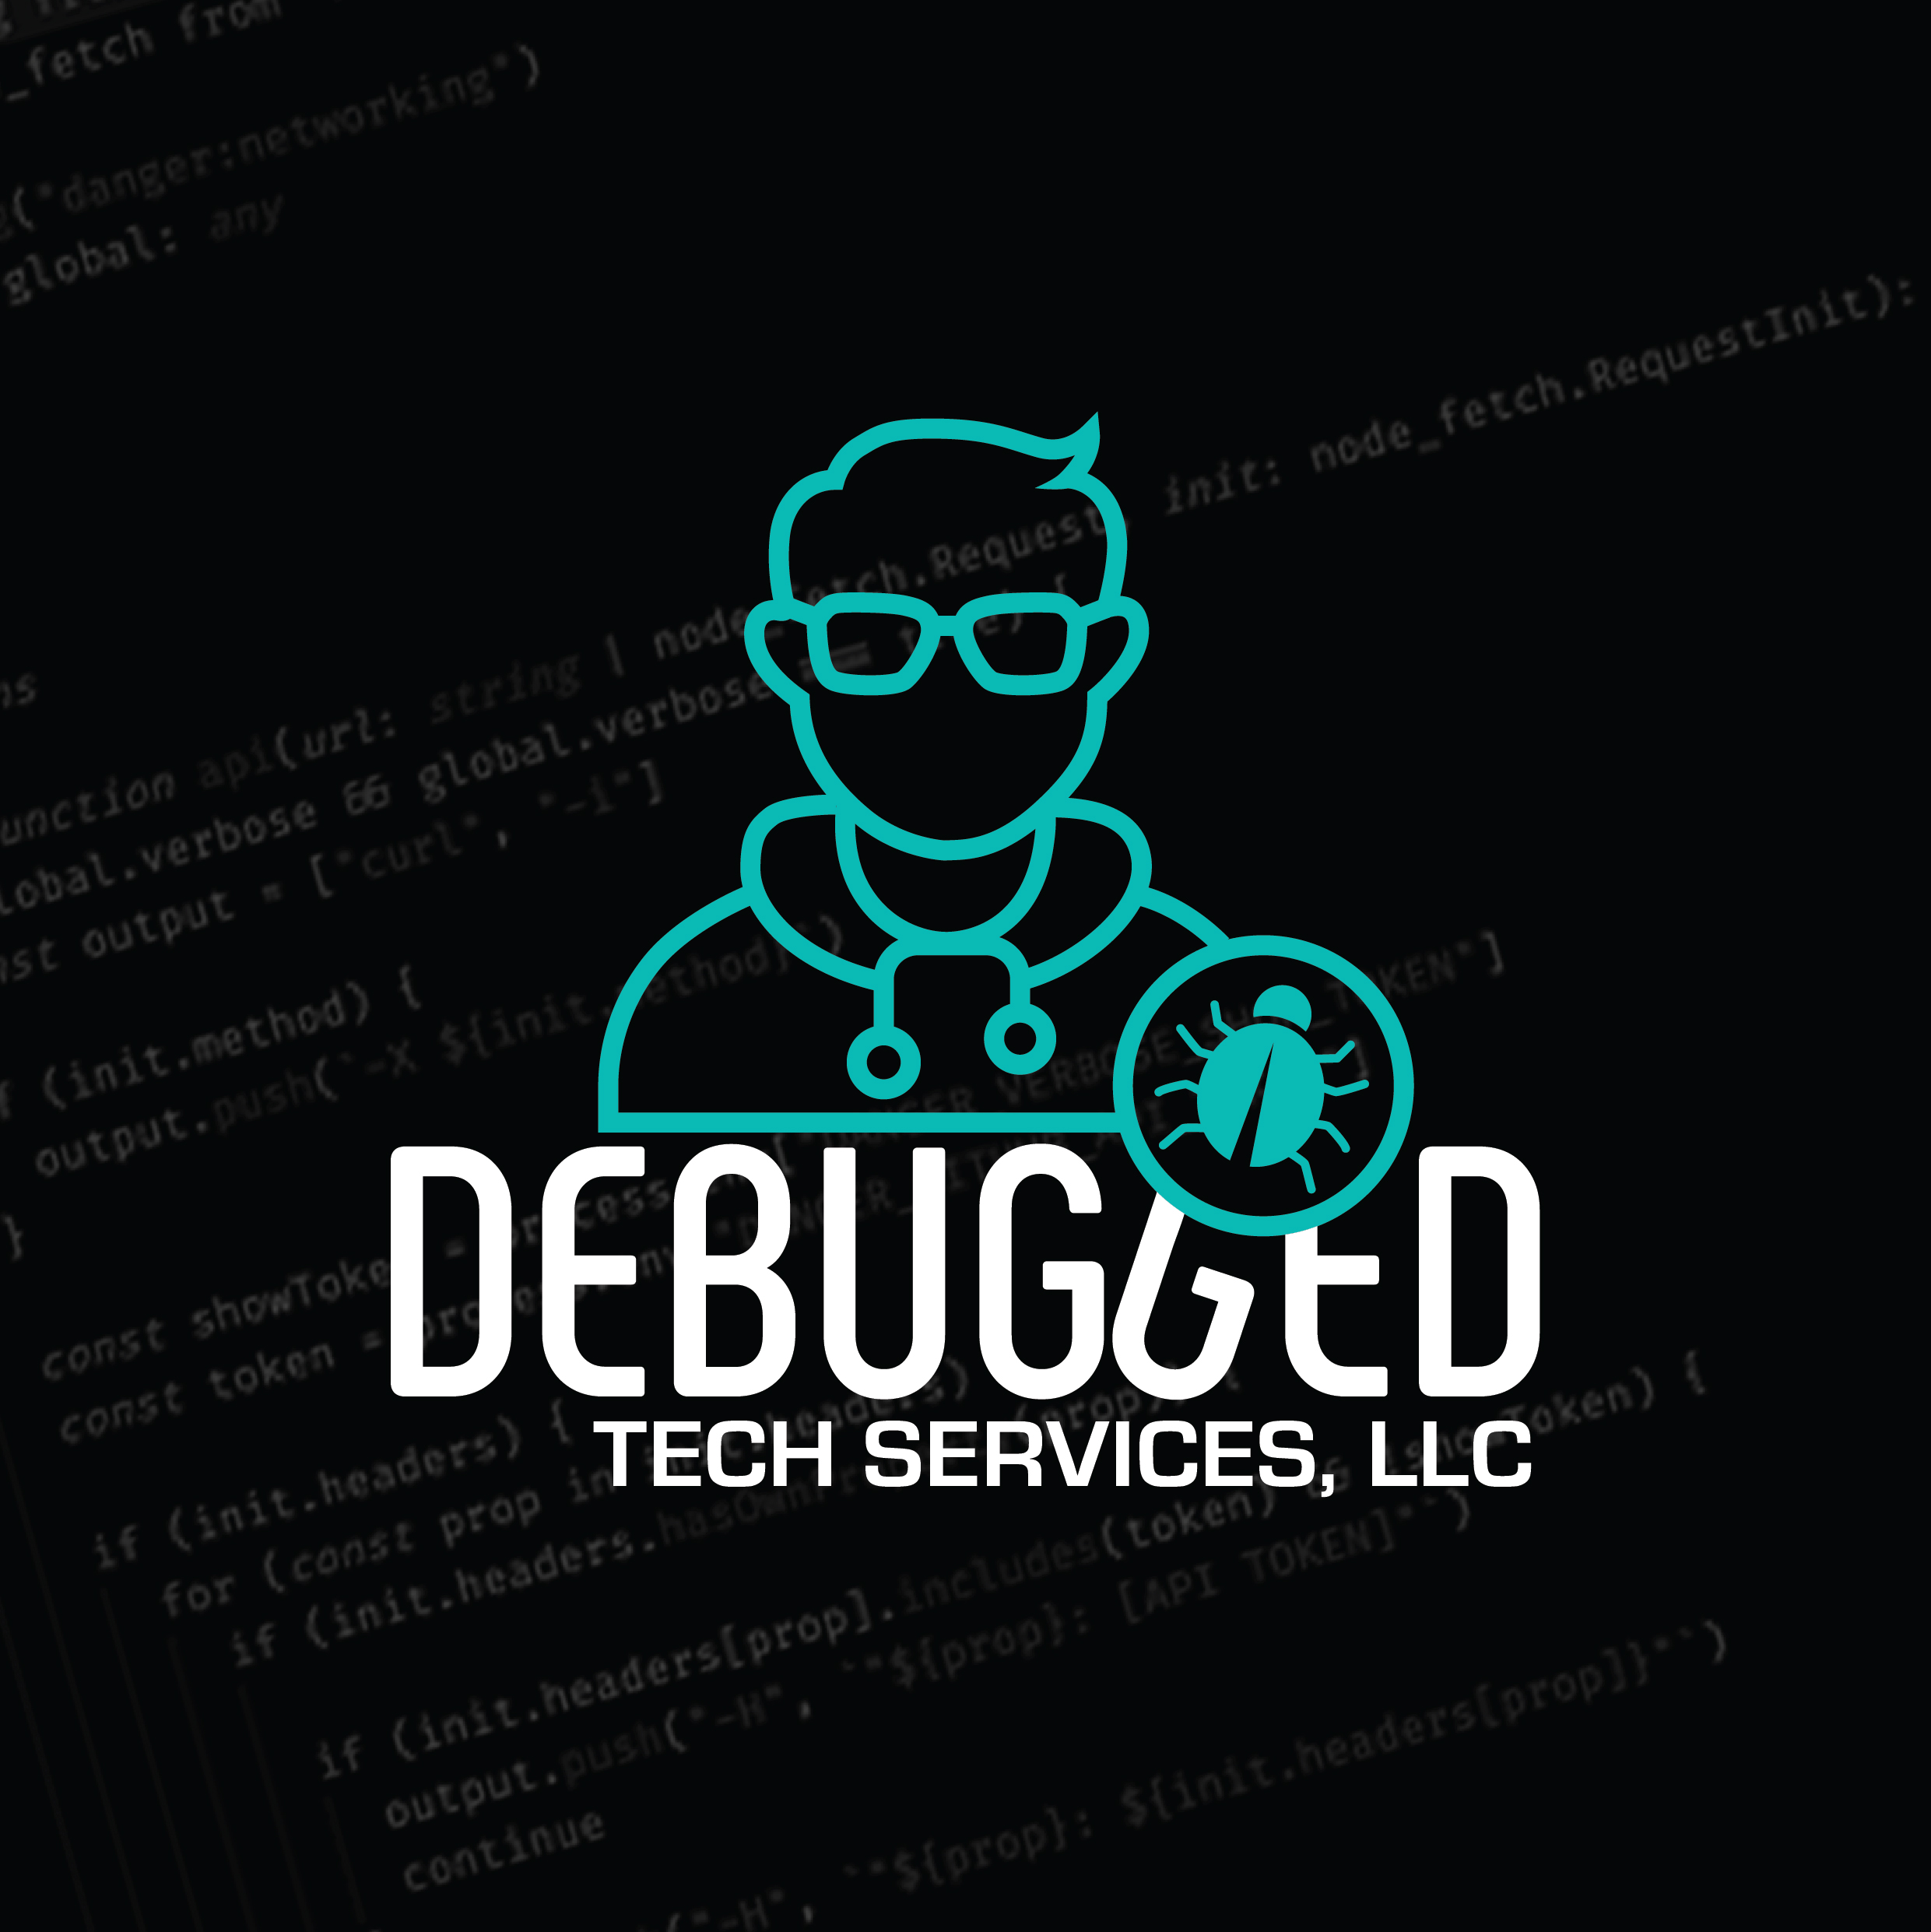 Debugged Tech Services